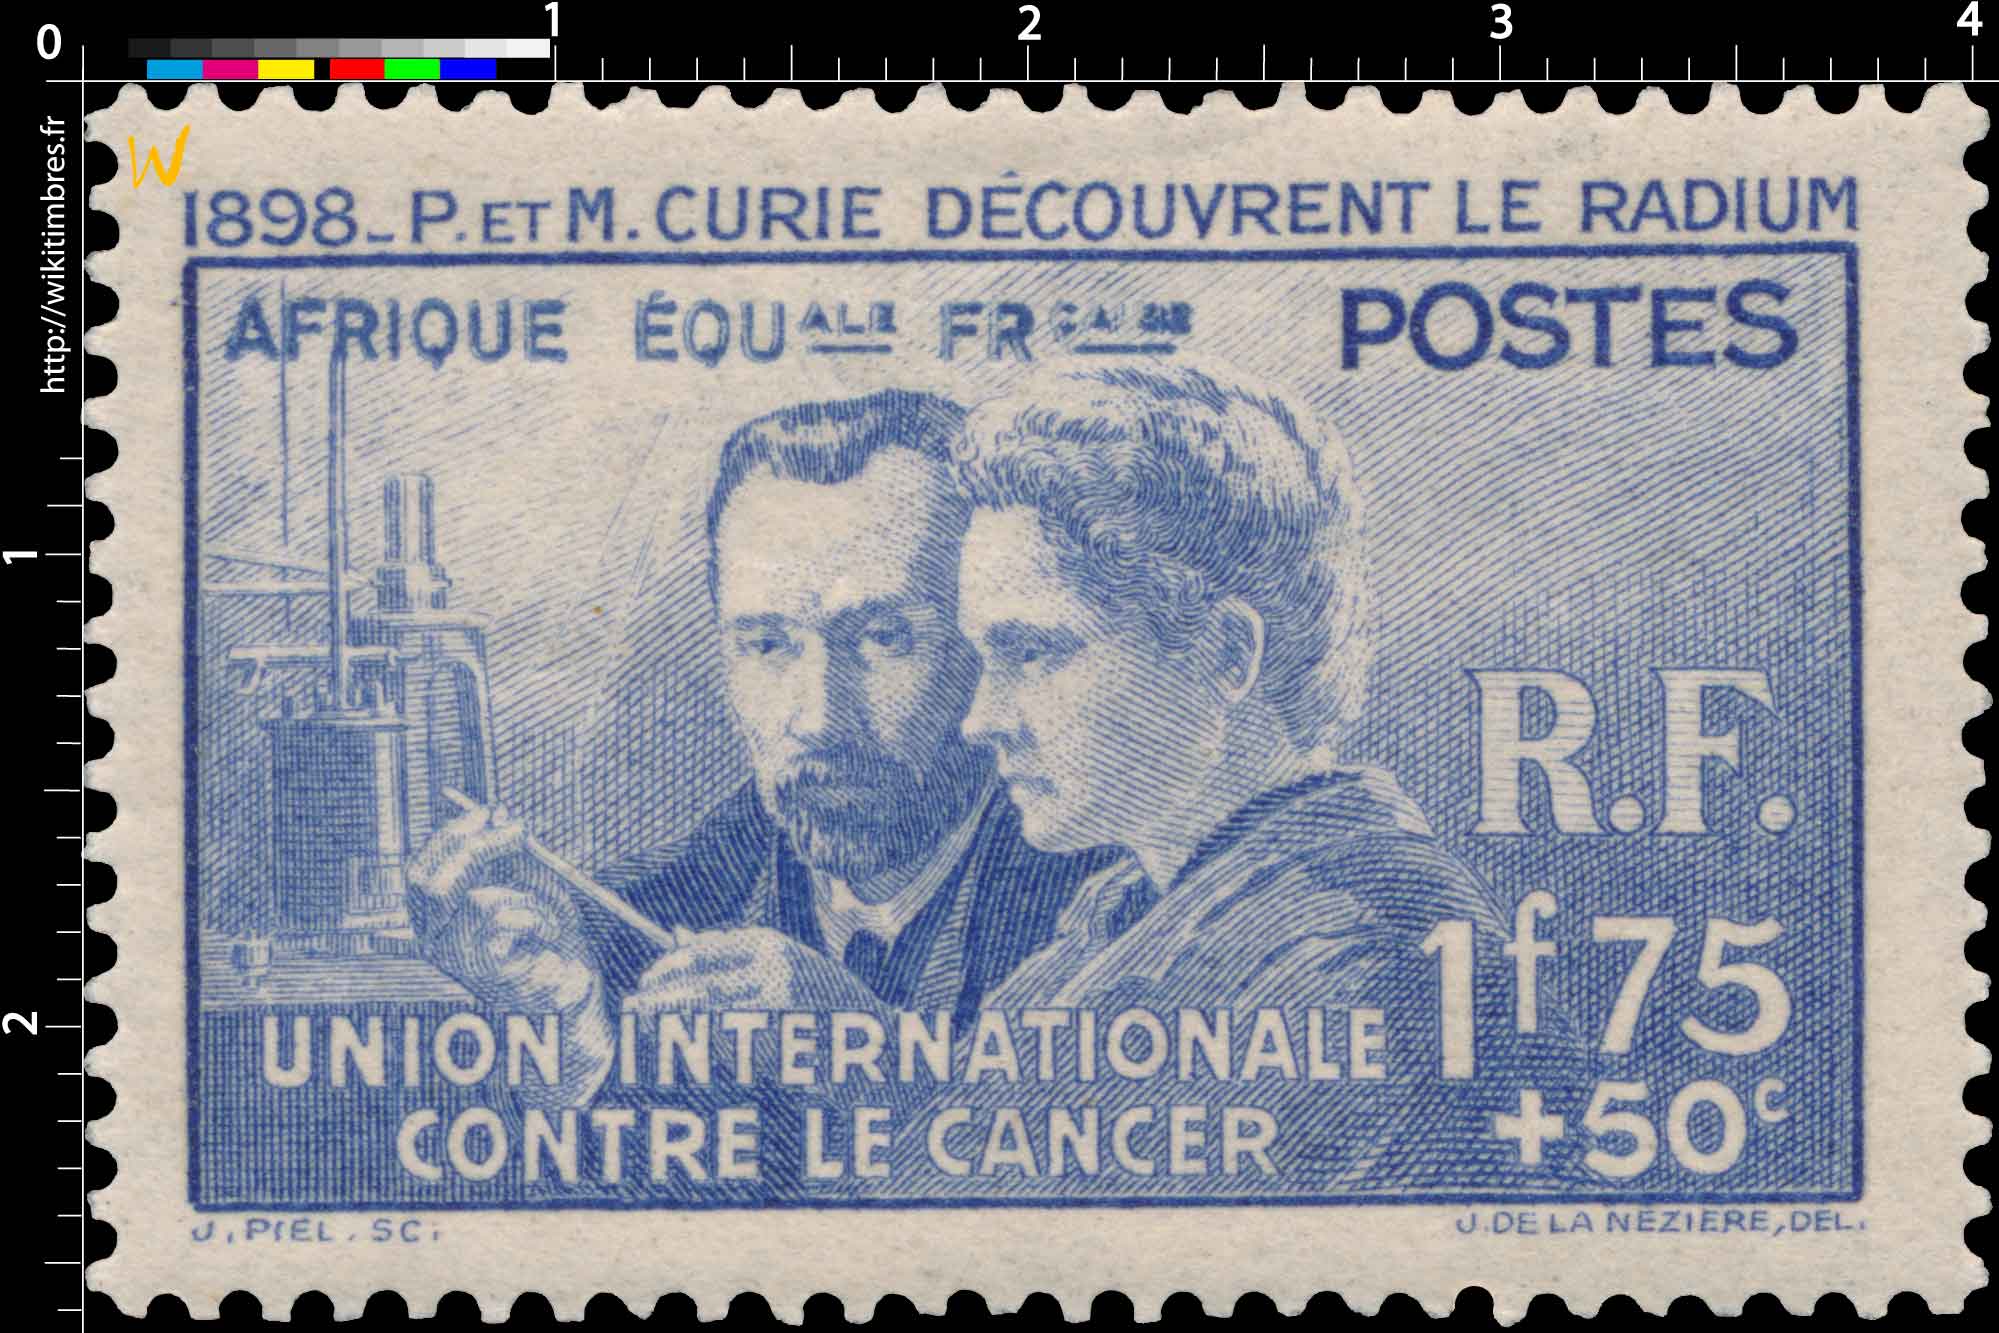 1898 P. et M. Curie découvrent le radium Union internationale contre le cancer